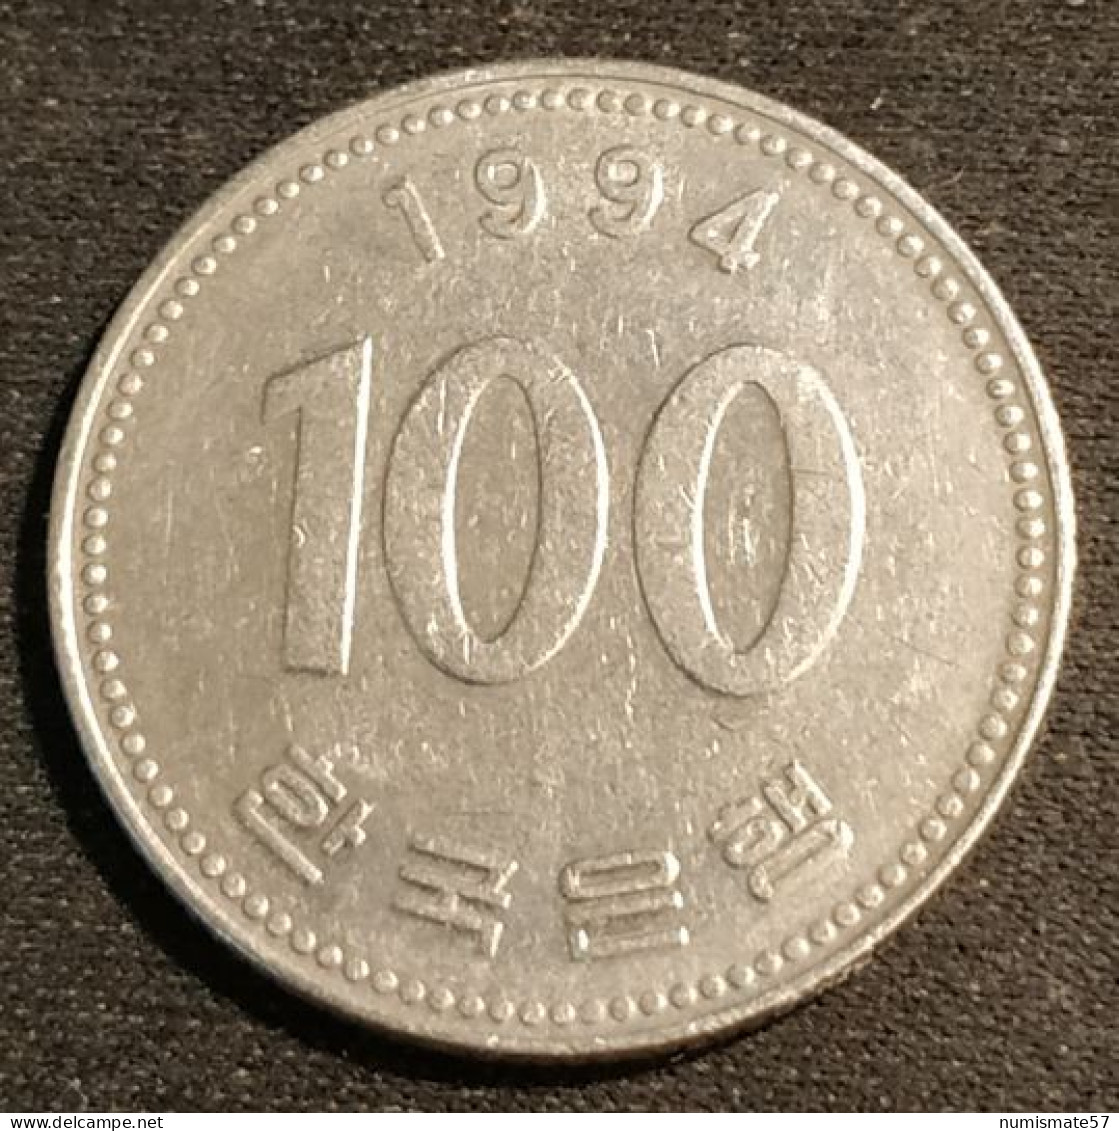 COREE DU SUD - SOUTH KOREA - 100 WON 1994 - KM 35 - Coreal Del Sur